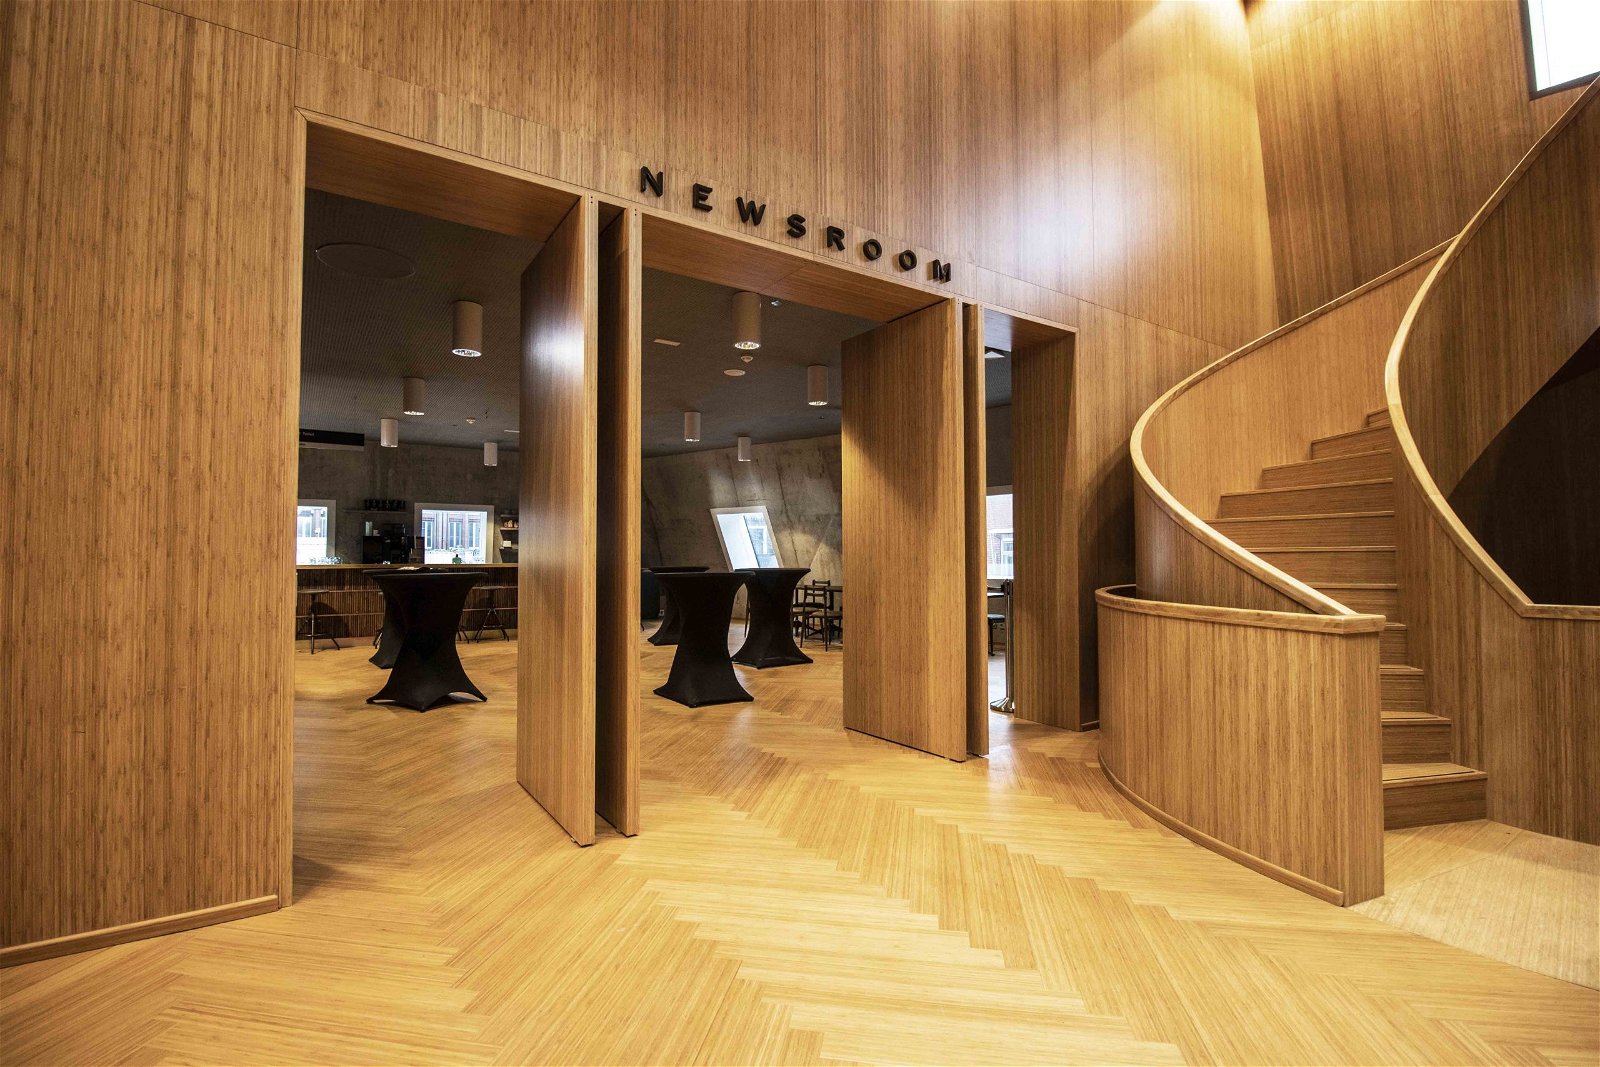 Groninger Forum bamboo pivot doors designed by NL Architects - FritsJurgens pivot hinges Inside.